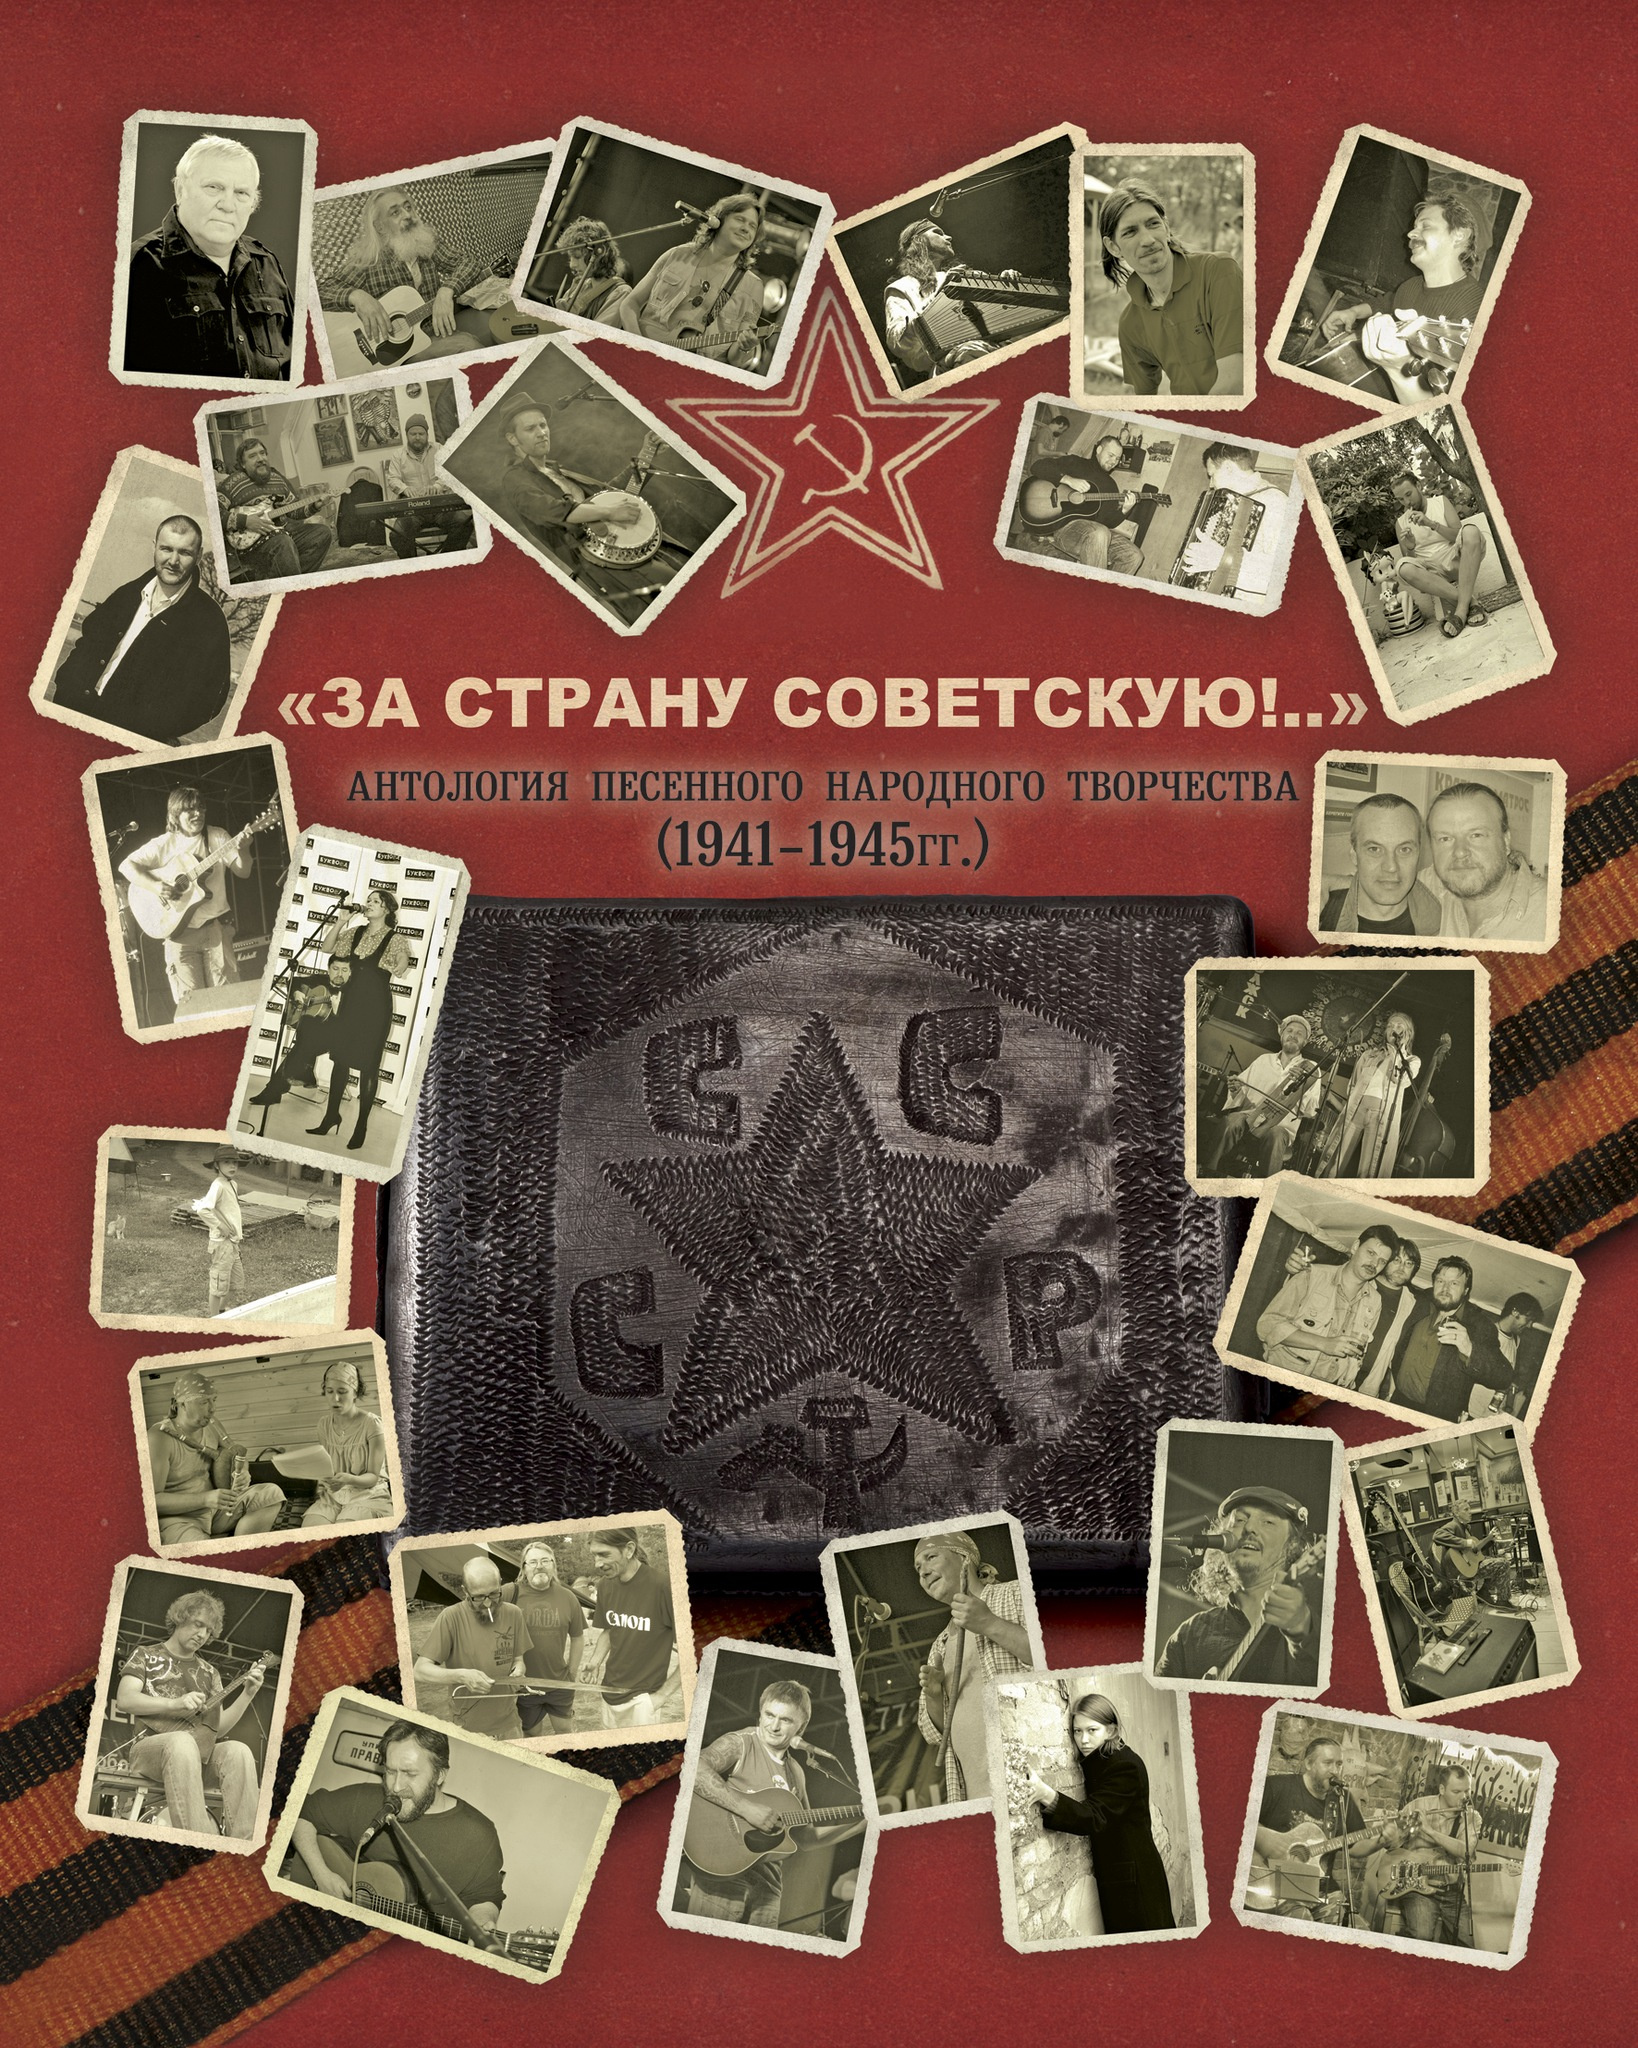 Постеры с музыкантами, участвовавшими в создании пластинок «Красного матроса». Из архива И. Шушарина